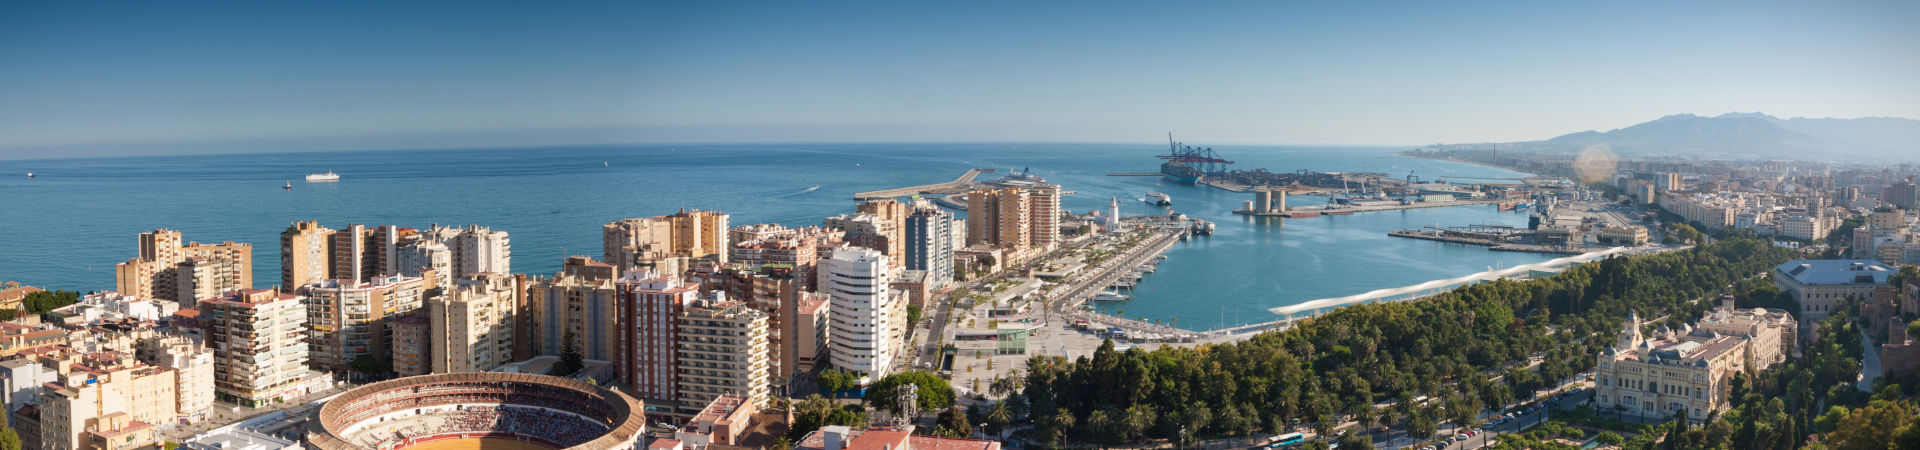 Immagine del porto di arrivo Malaga per la rotta traghetto Melilla - Malaga